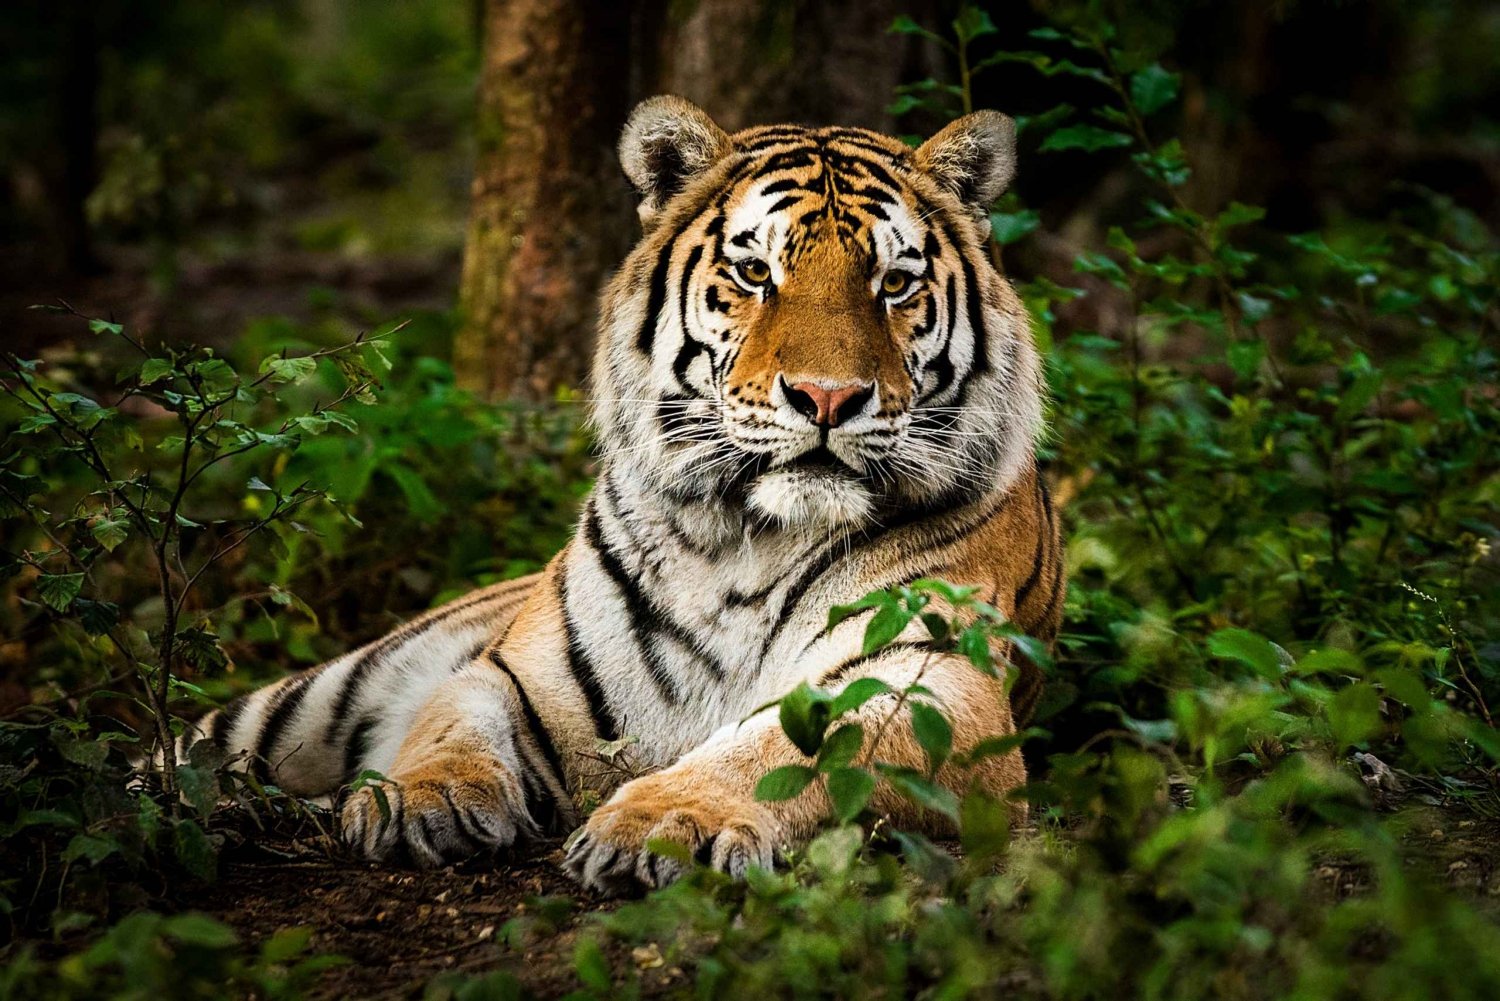 Z Delhi: Prywatna 3-dniowa wycieczka safari po dzikiej przyrodzie w Ranthambore